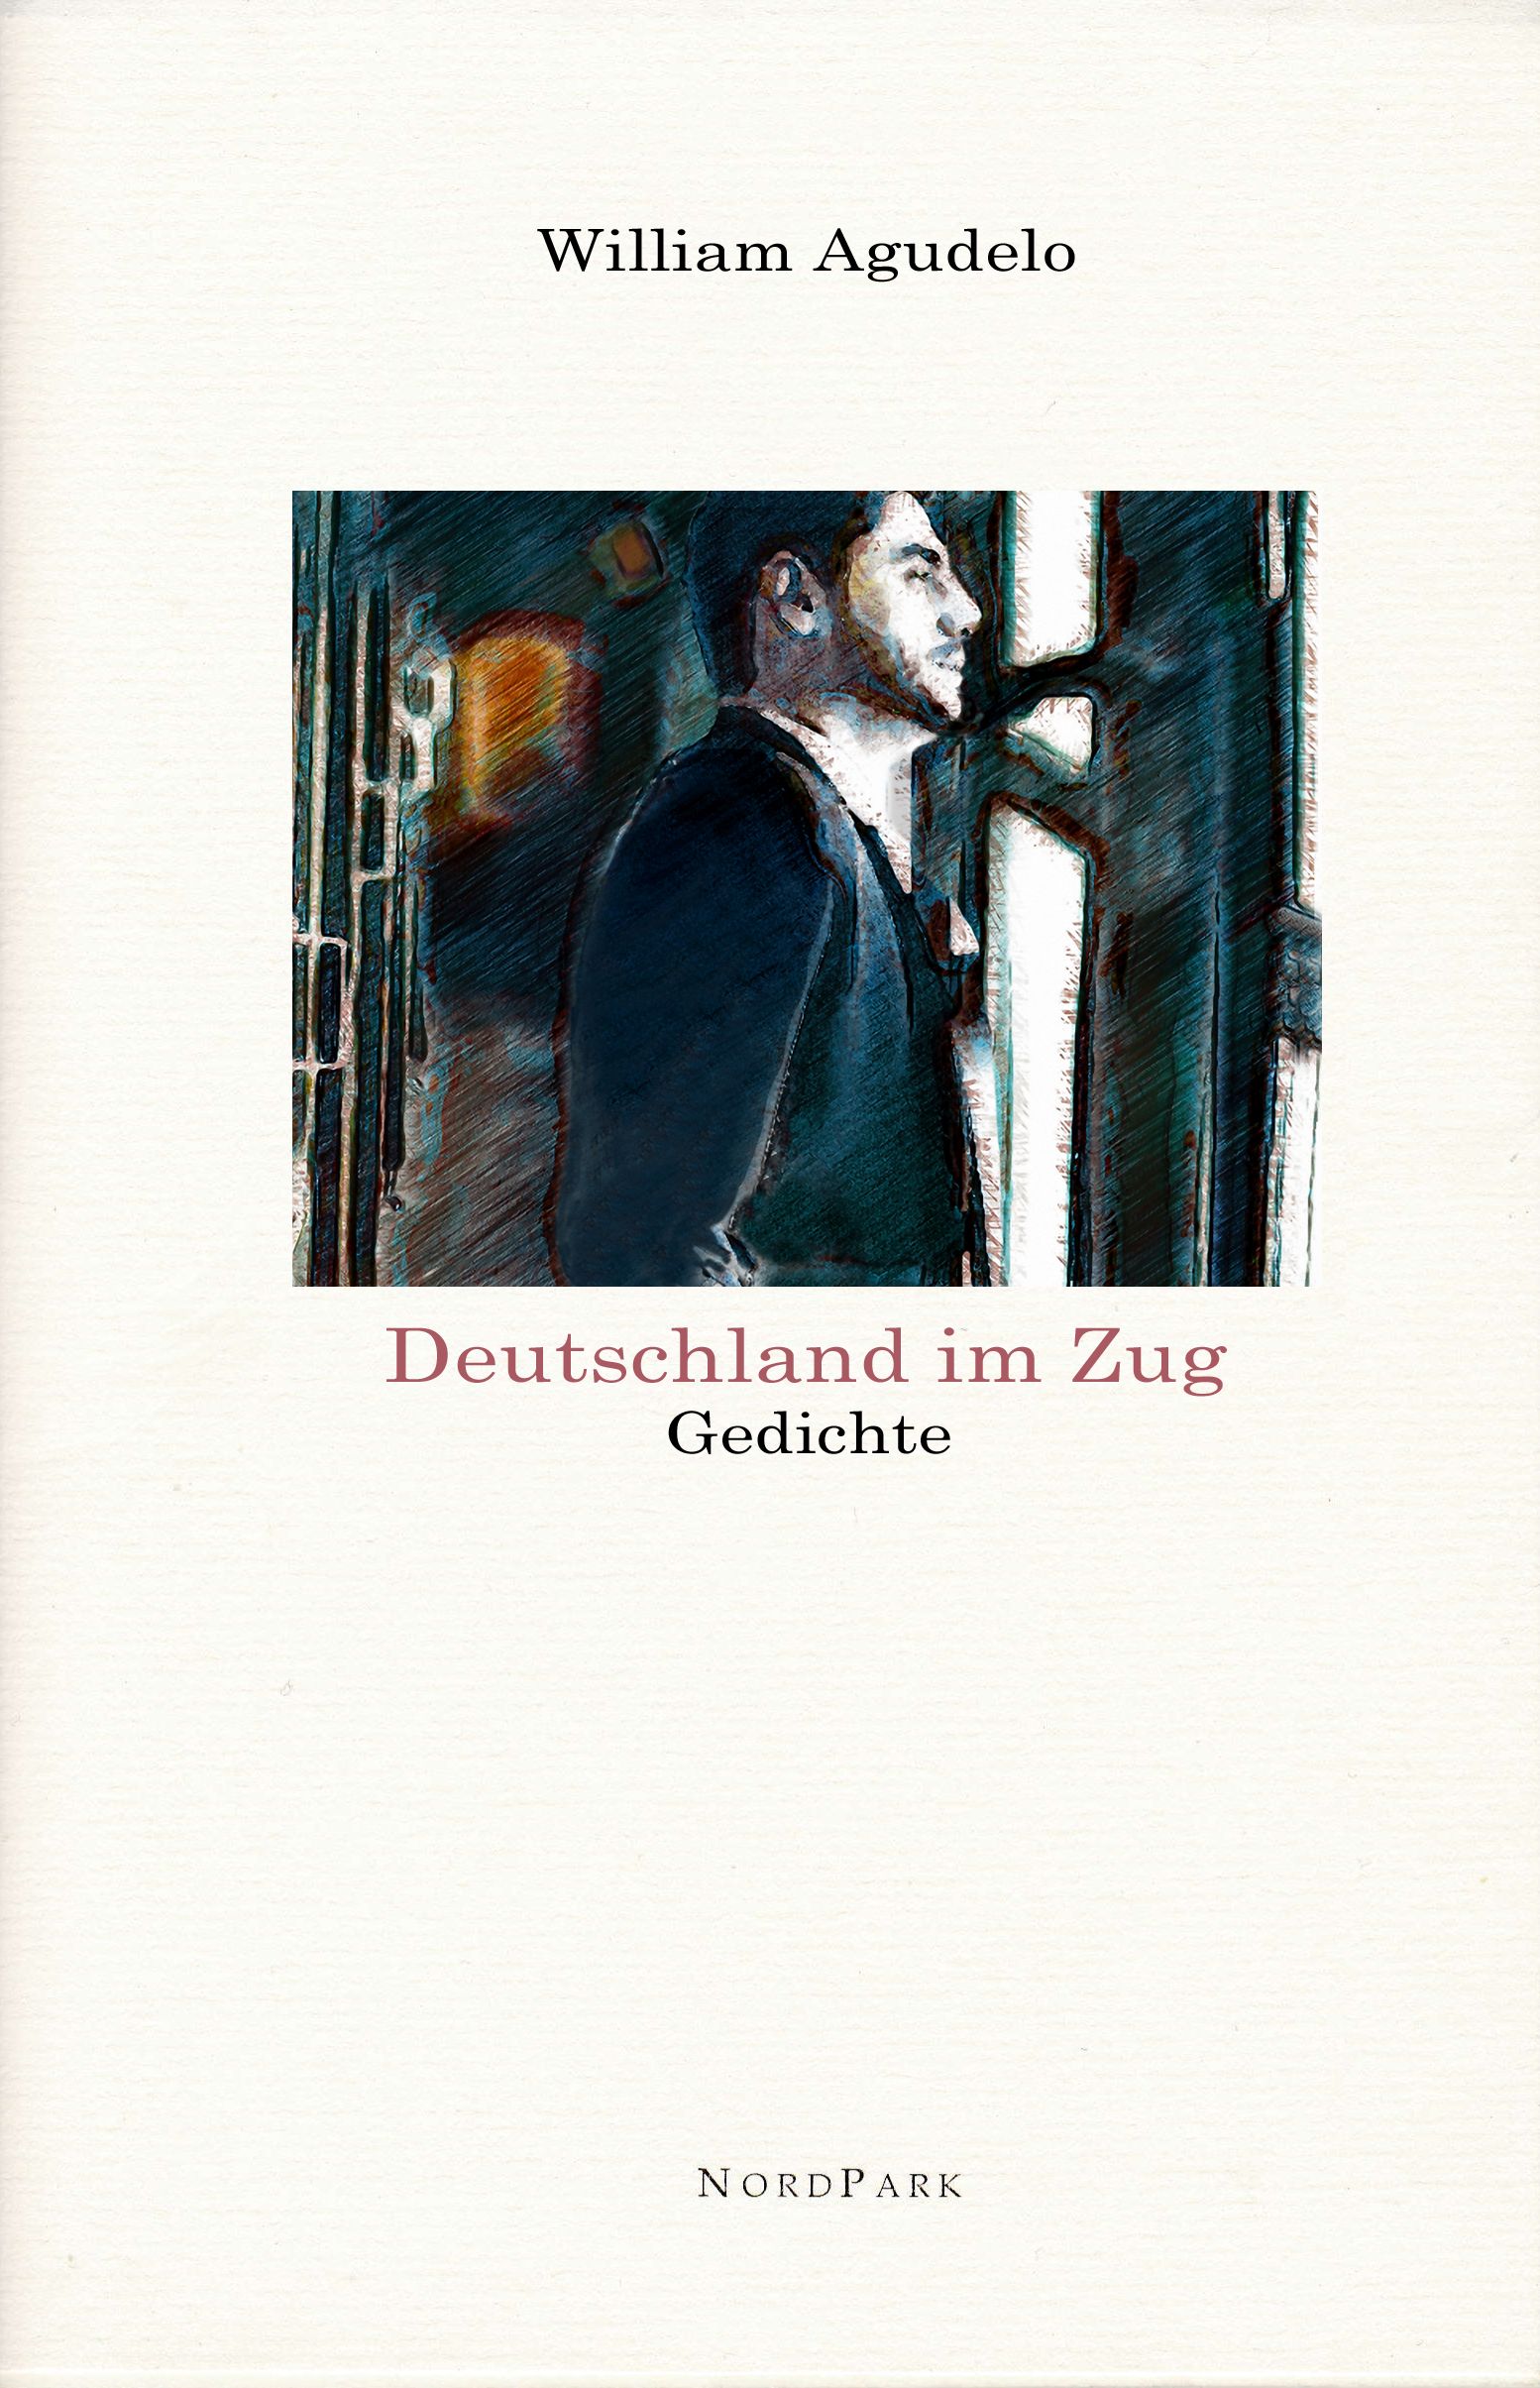 Die Besonderen Hefte: Cover-DEUTSCHLAND IM ZUG-Montage.jpg